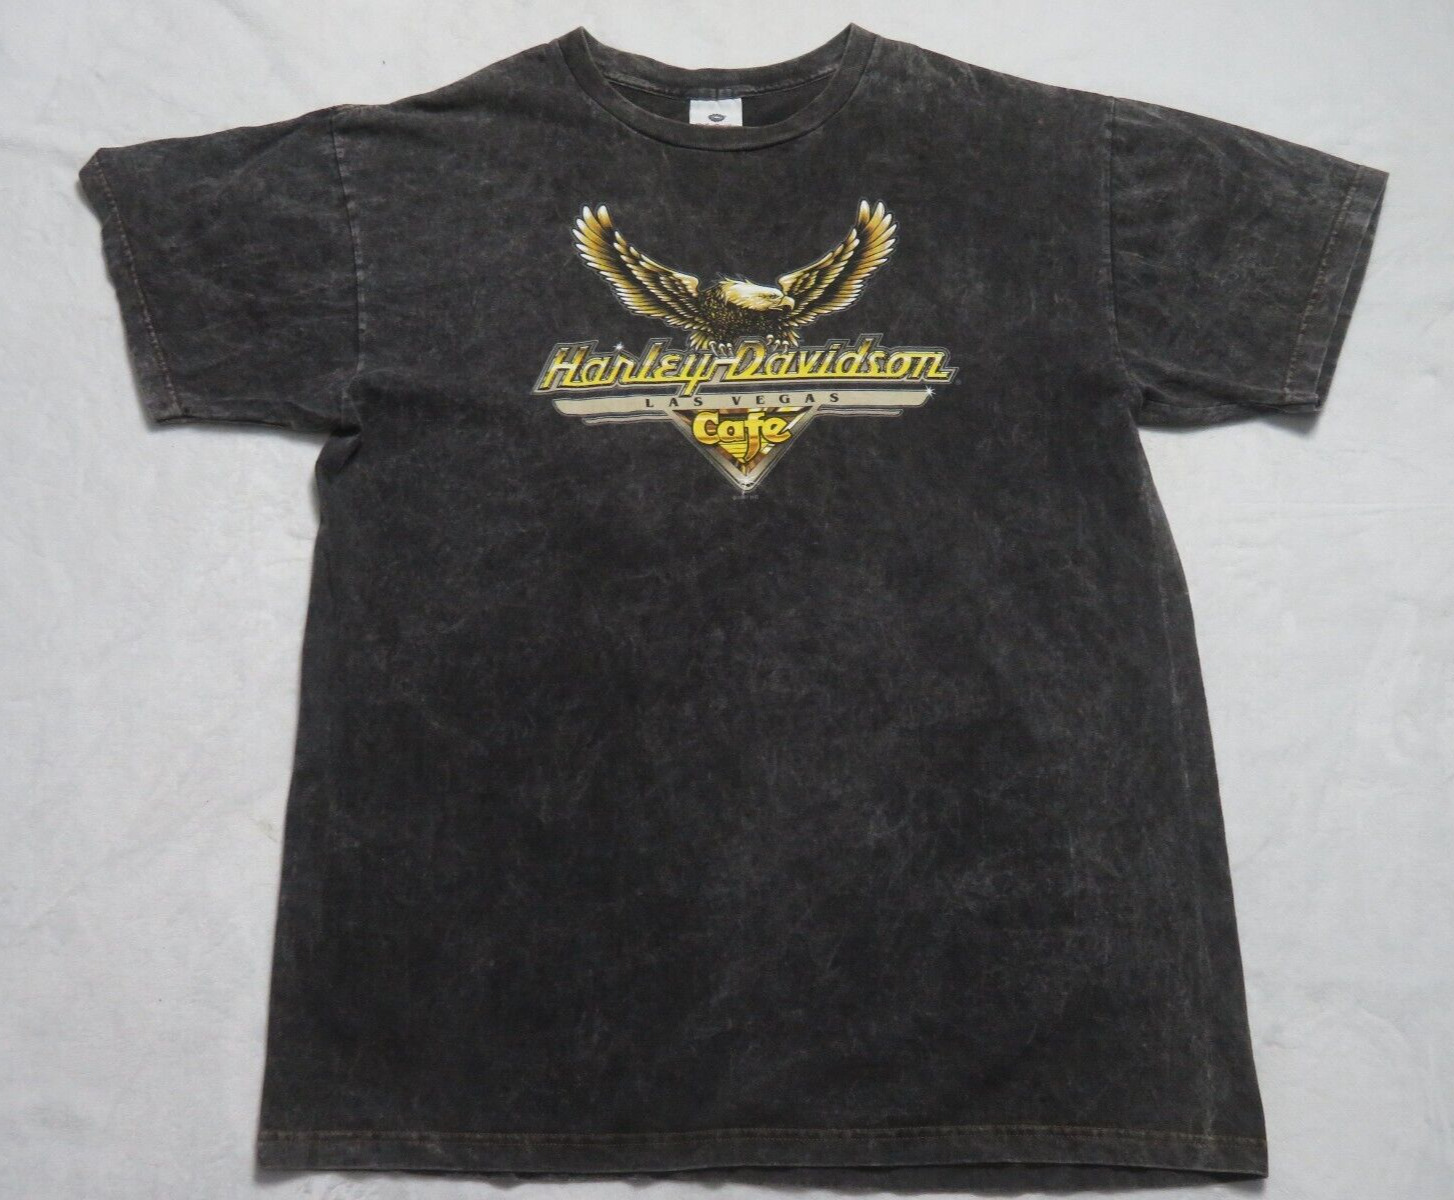 Vintage 1997 Harley Davidson Cafe Shirt Size XL Men Pre Owned Rare 90s